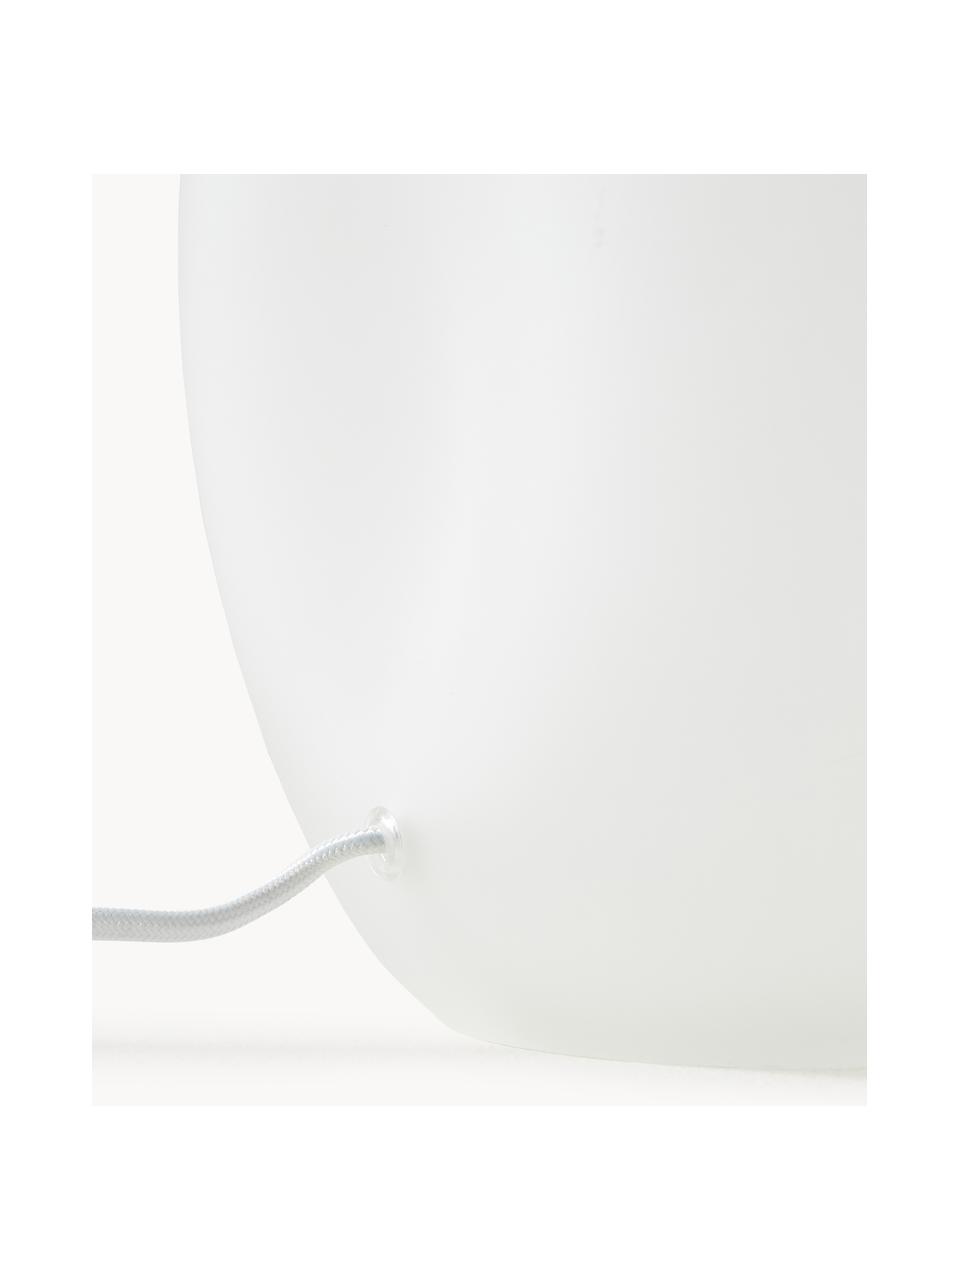 Lampada da tavolo con base in vetro semitrasparente Leia, Paralume: tessuto, Base della lampada: vetro, Bianco, Ø 30 x Alt. 53 cm